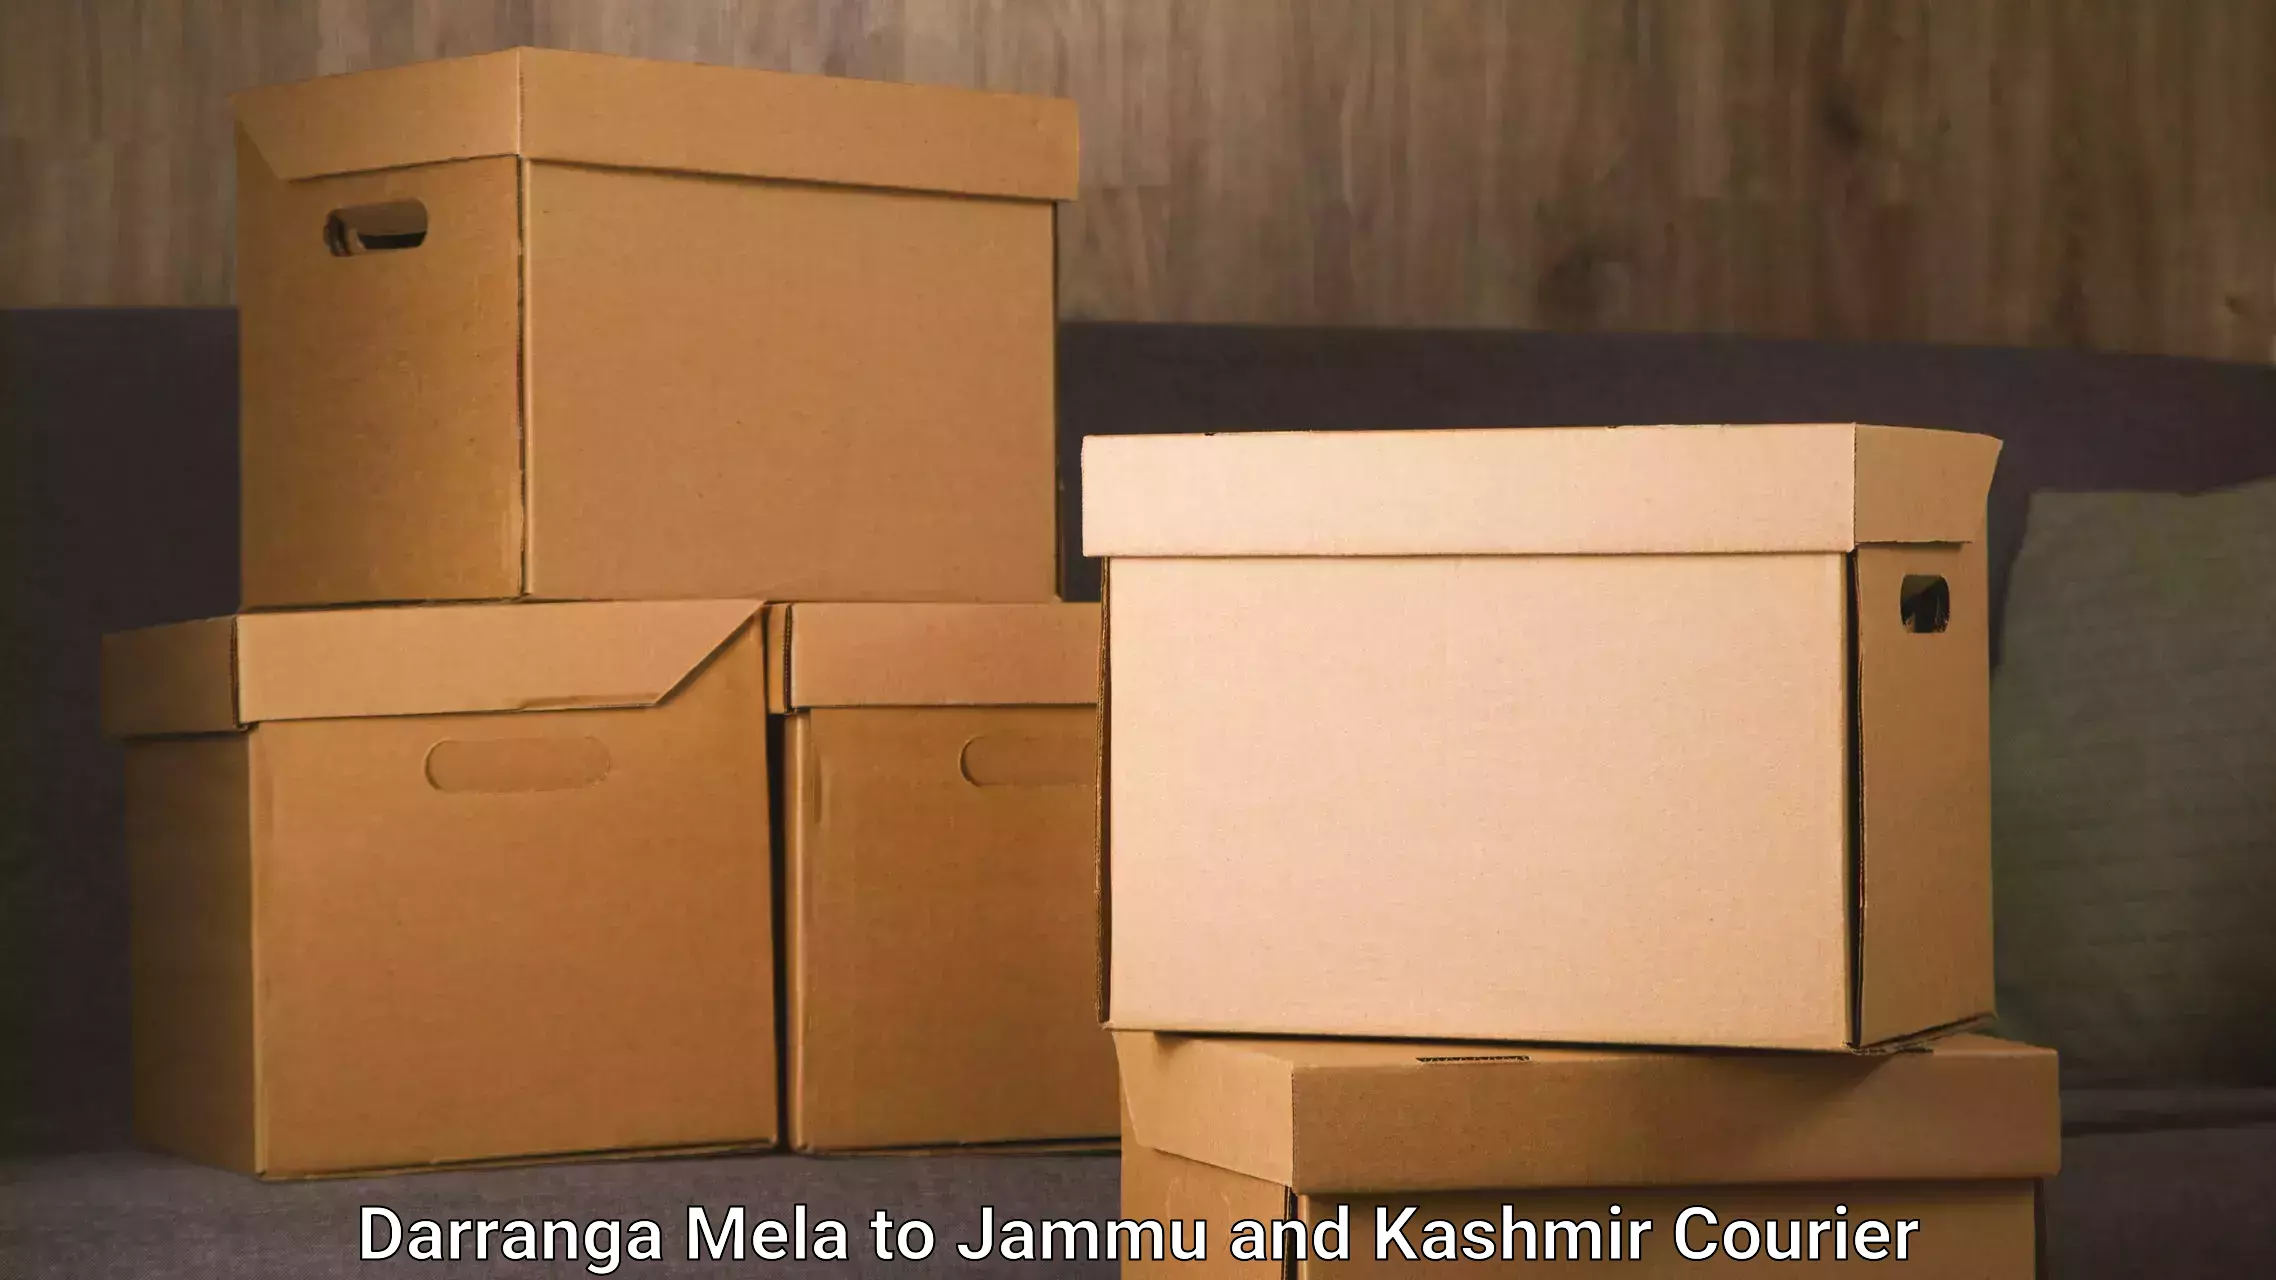 Quick dispatch service Darranga Mela to Jammu and Kashmir